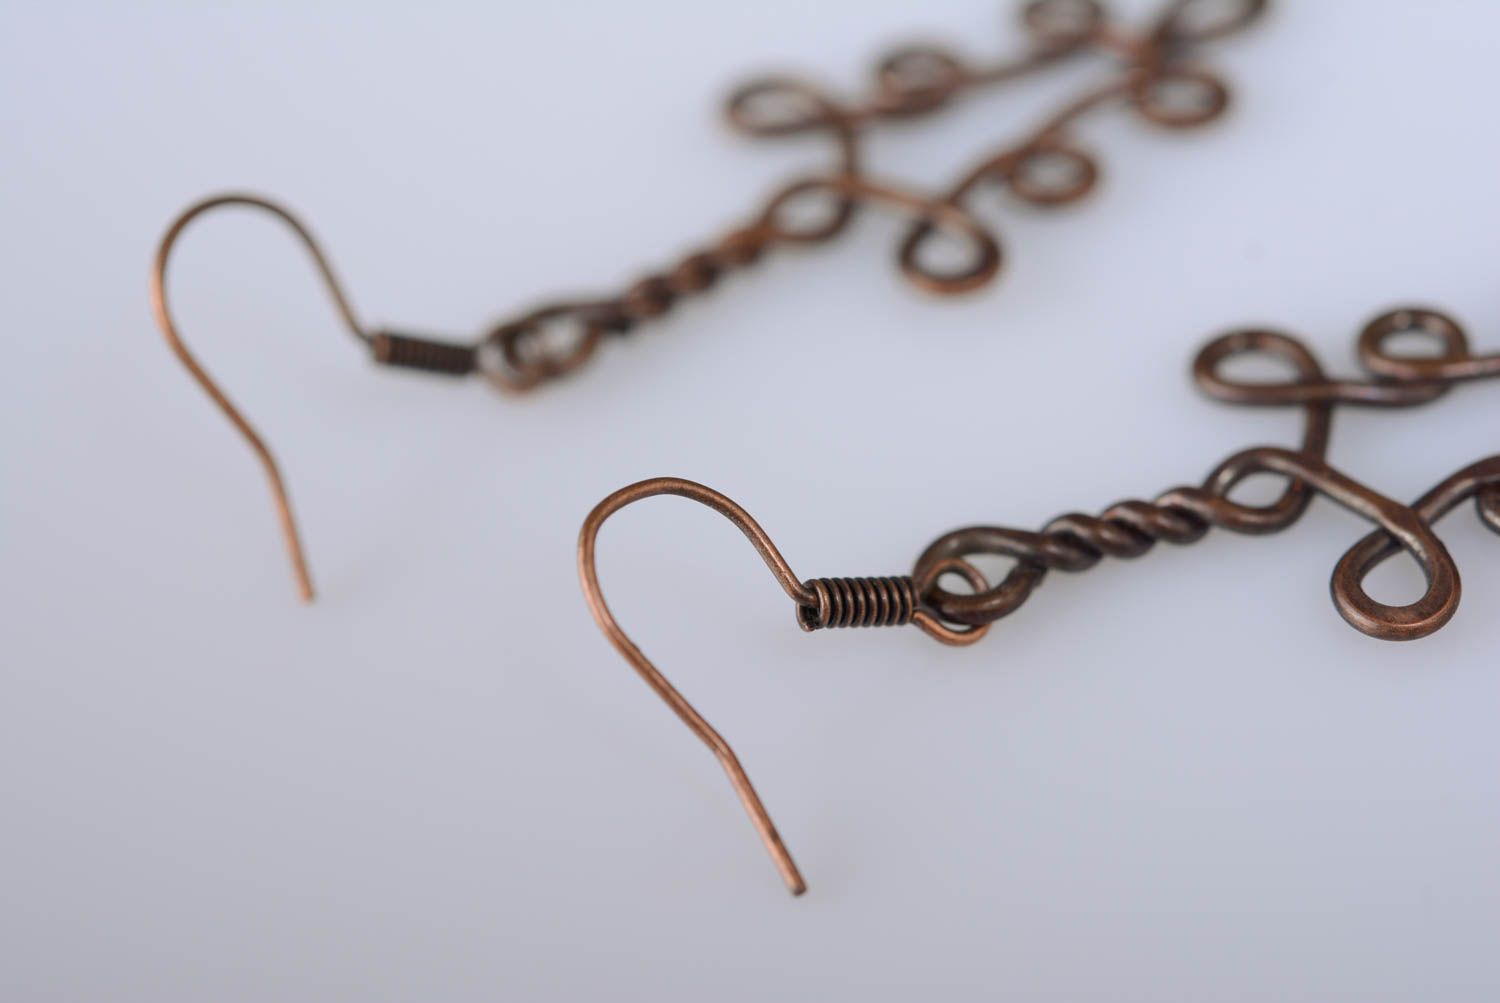 Boucles d'oreilles en cuivre technique originale wire wrapping faites main photo 5